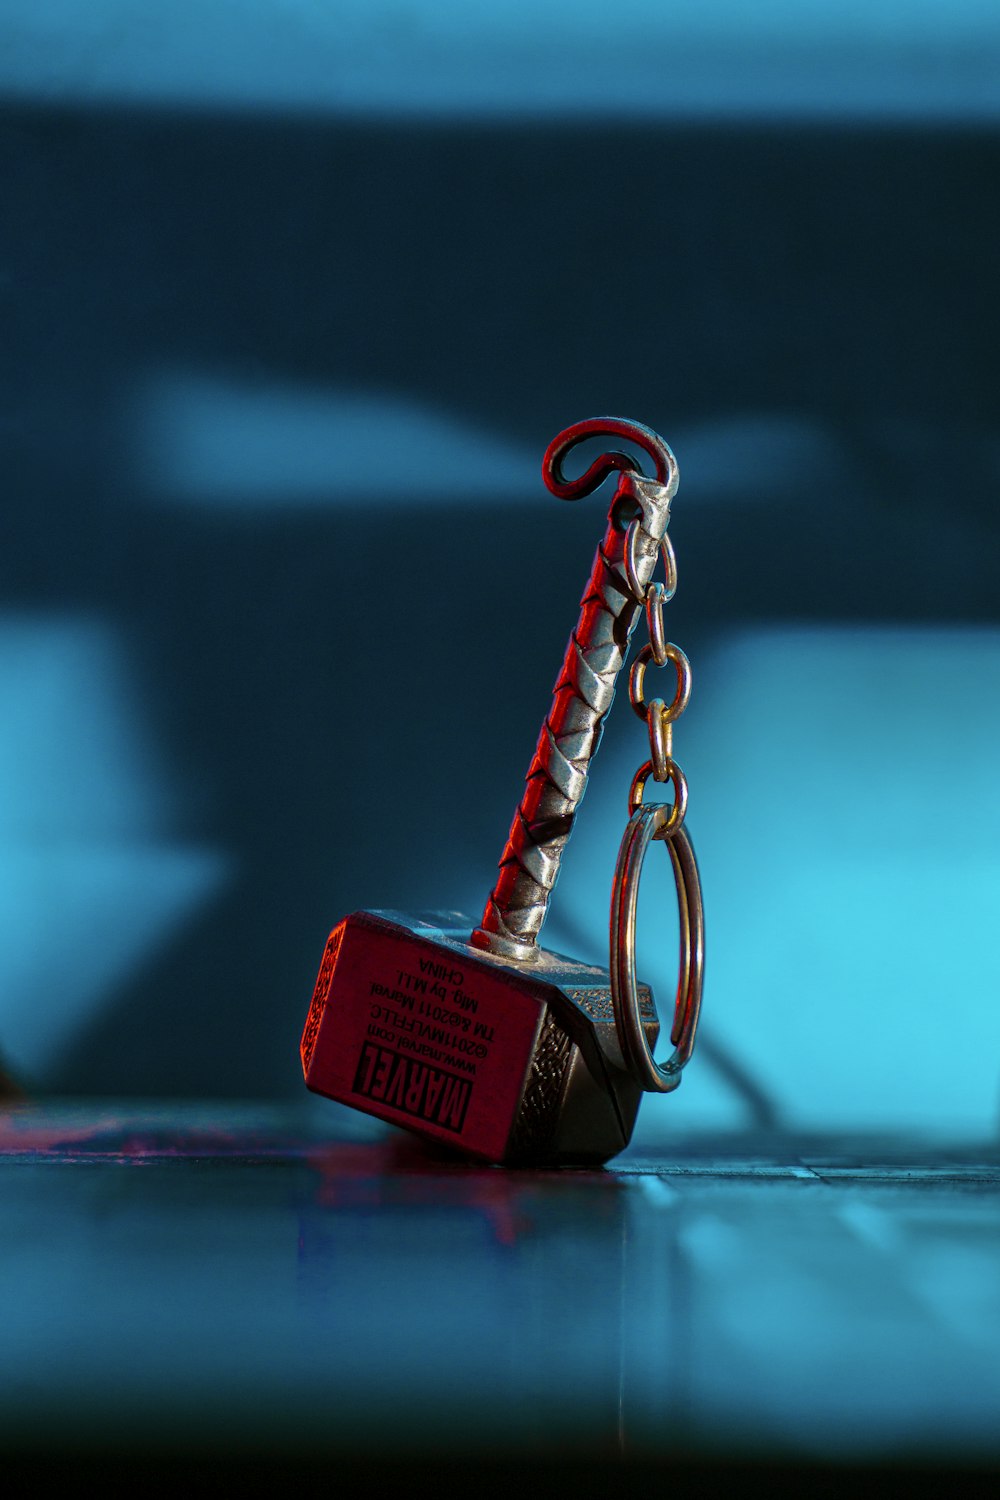 un porte-clés rouge auquel est attaché un crochet en métal